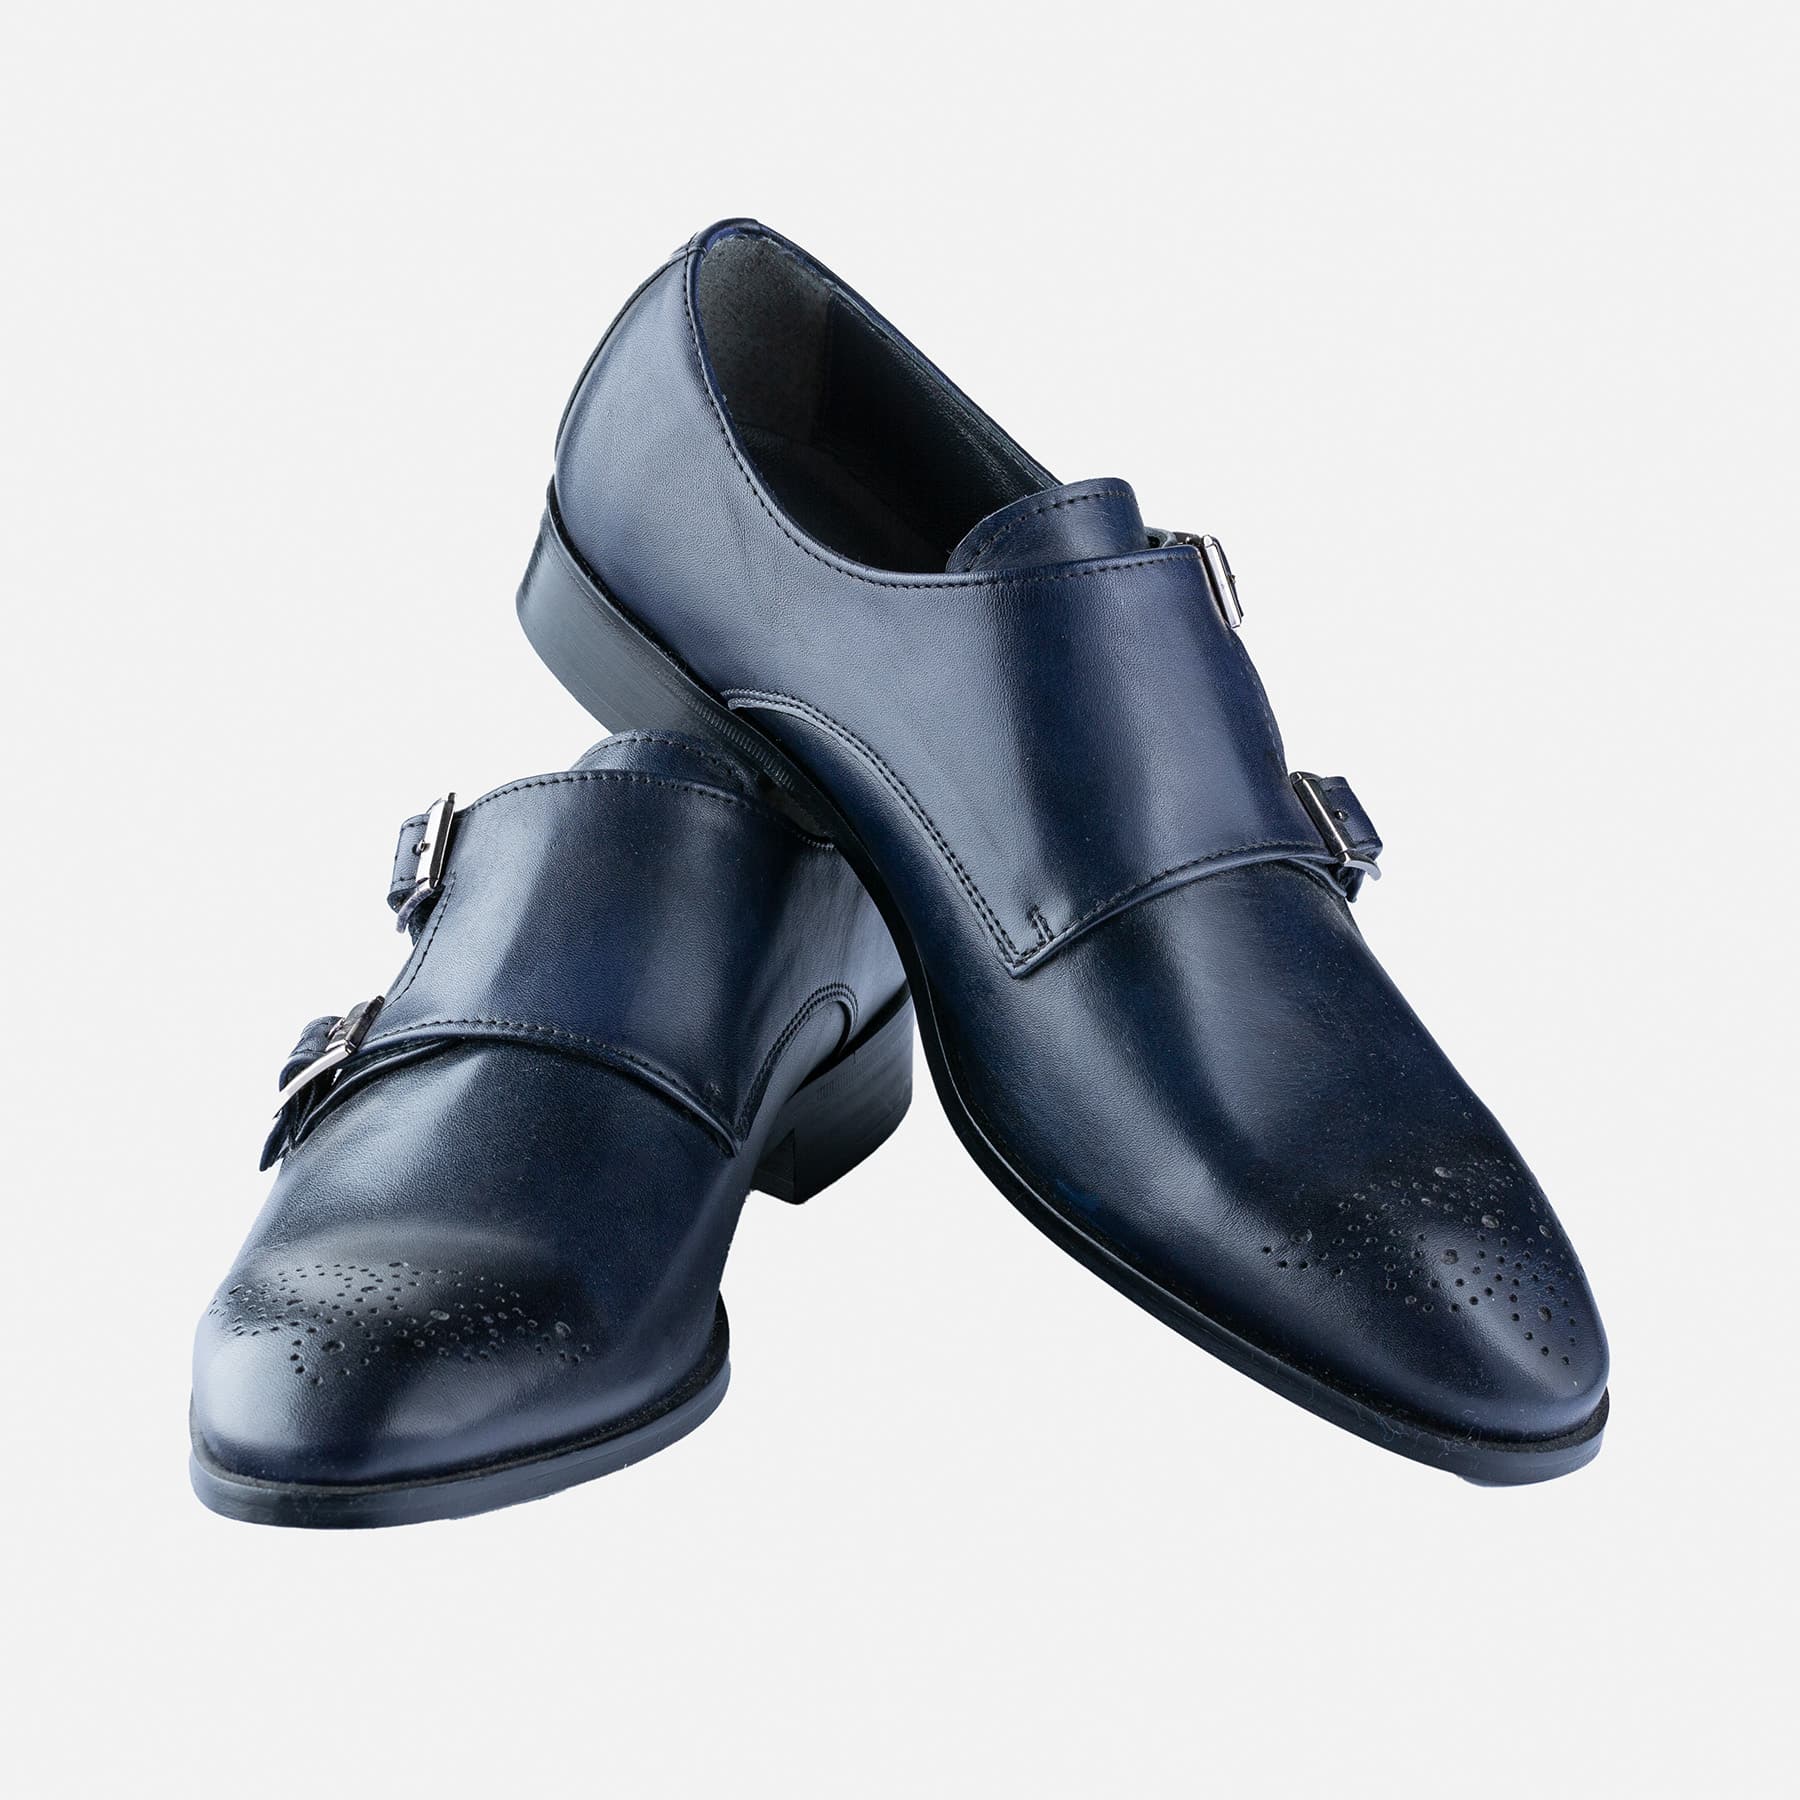 Banquete Perfecto Cita Zapatos Azules Hebillas | Gentleman Don Benito, Moda Hombre.